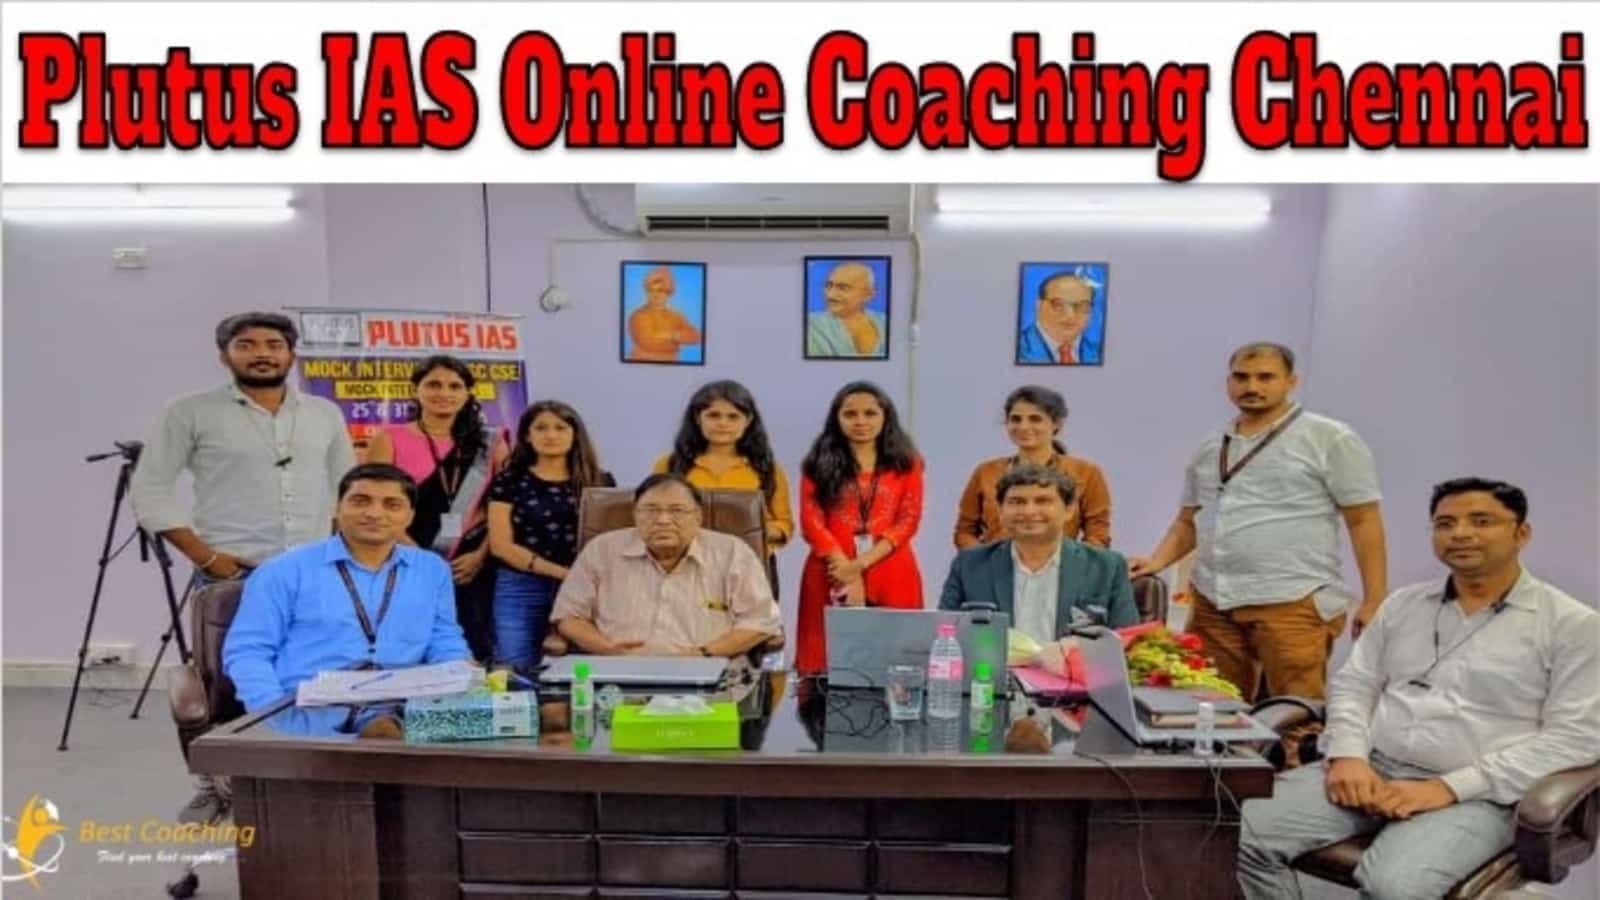 Plutus IAS Online Coaching Chennai